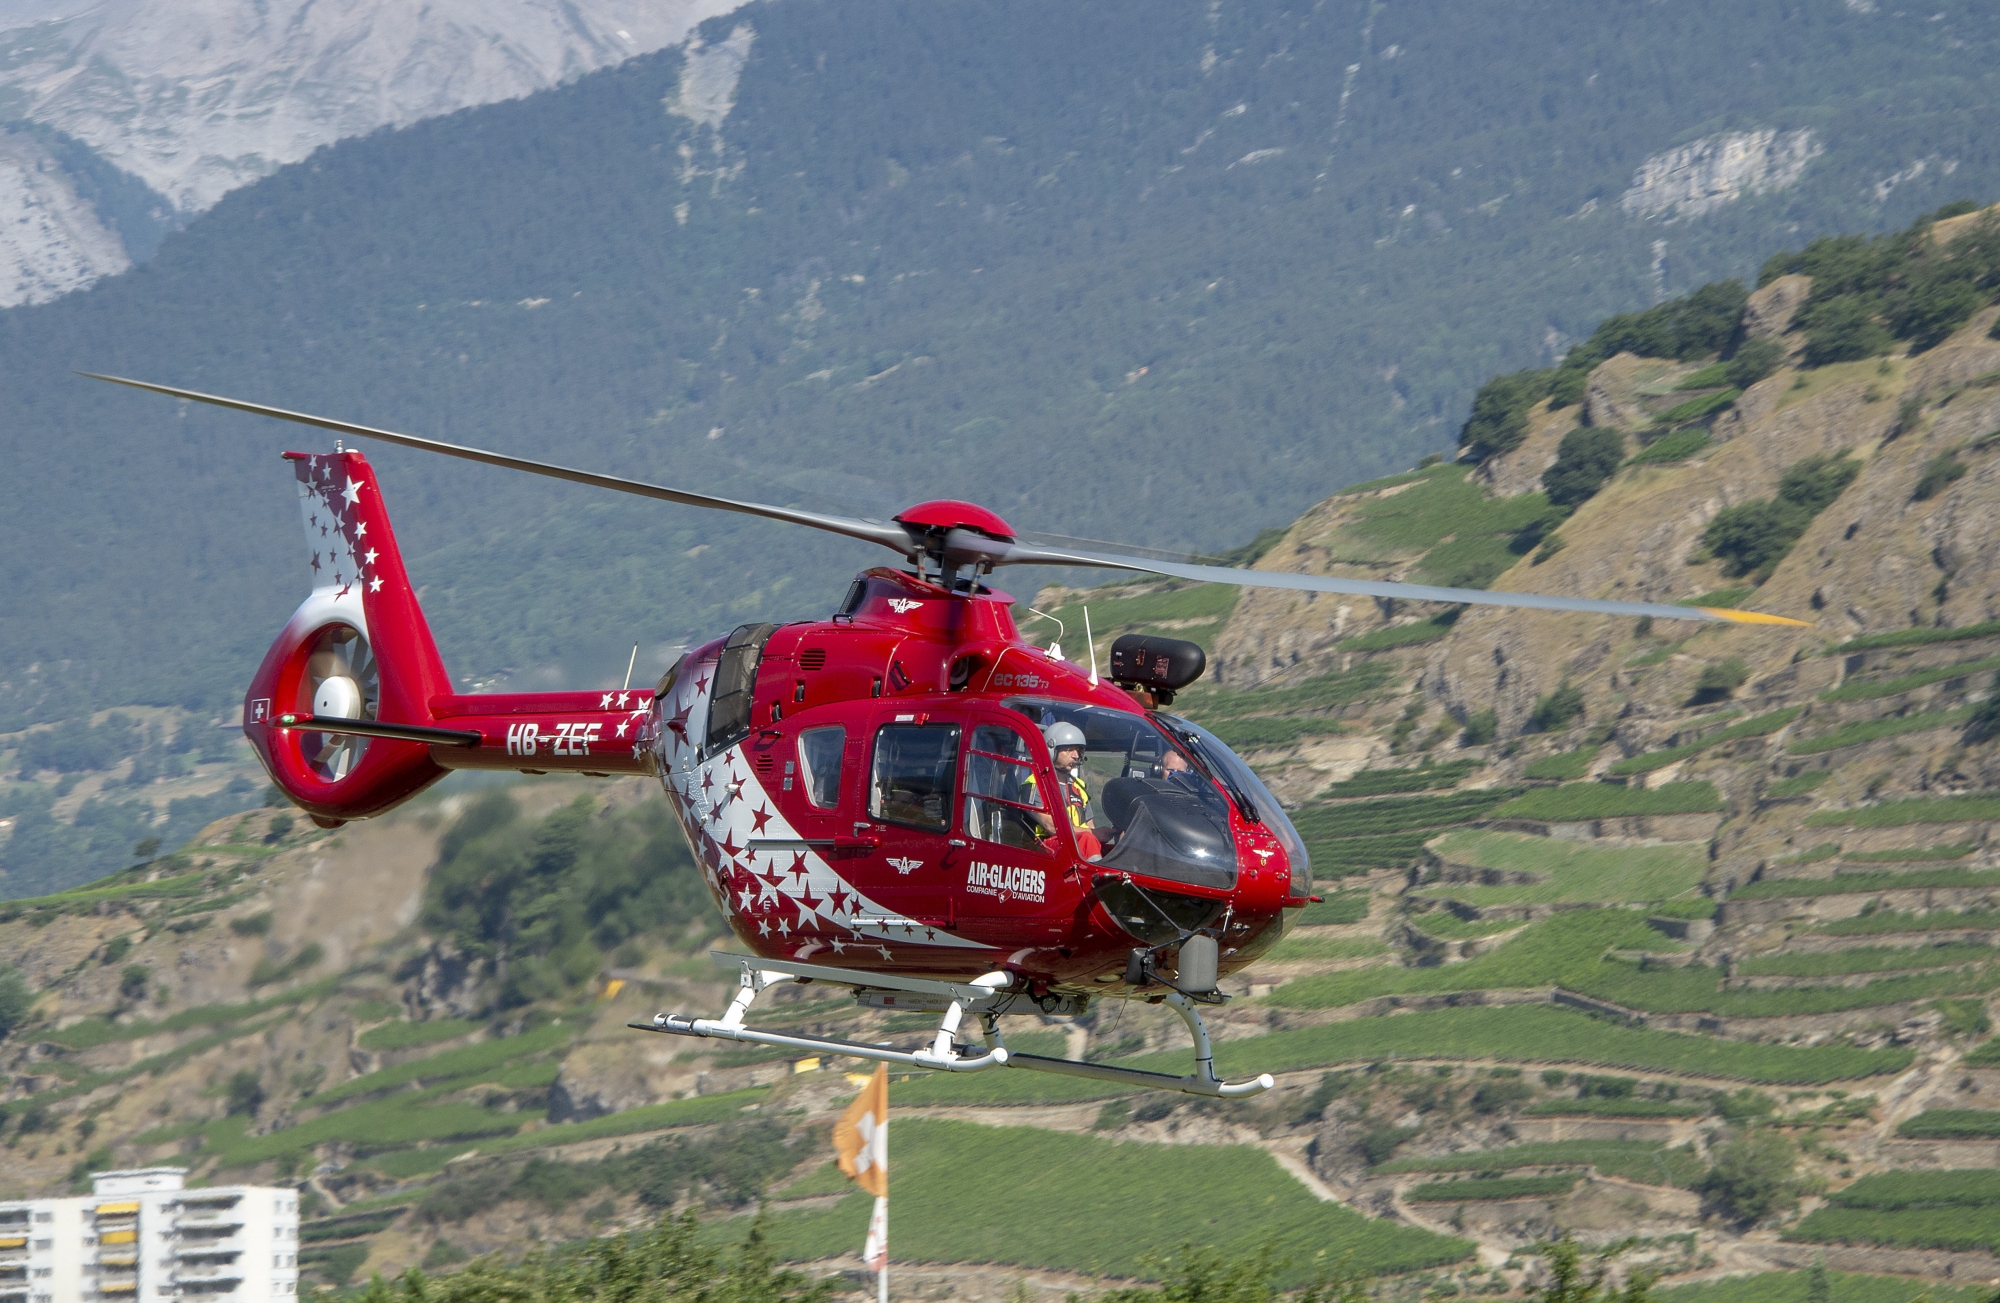 Air-Glaciers dispose à nouveau d’un hélicoptère biturbine EC135. Il a été loué à la compagnie haut-valaisanne Air Zermatt et permet les missions de sauvetage de nuit.